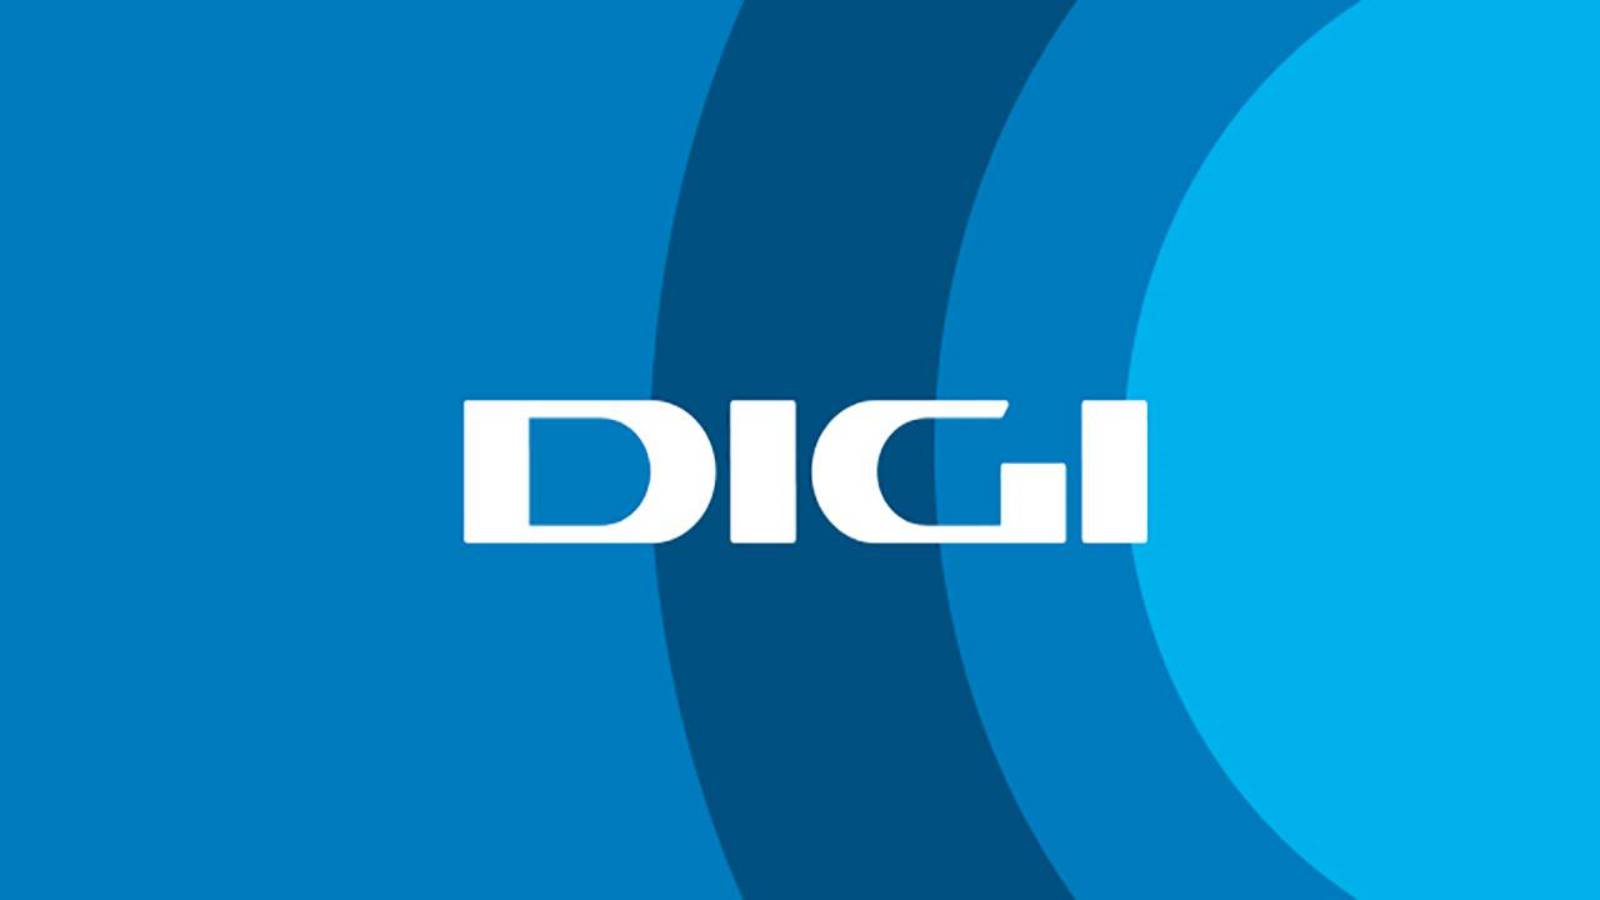 DIGI Romania schedules